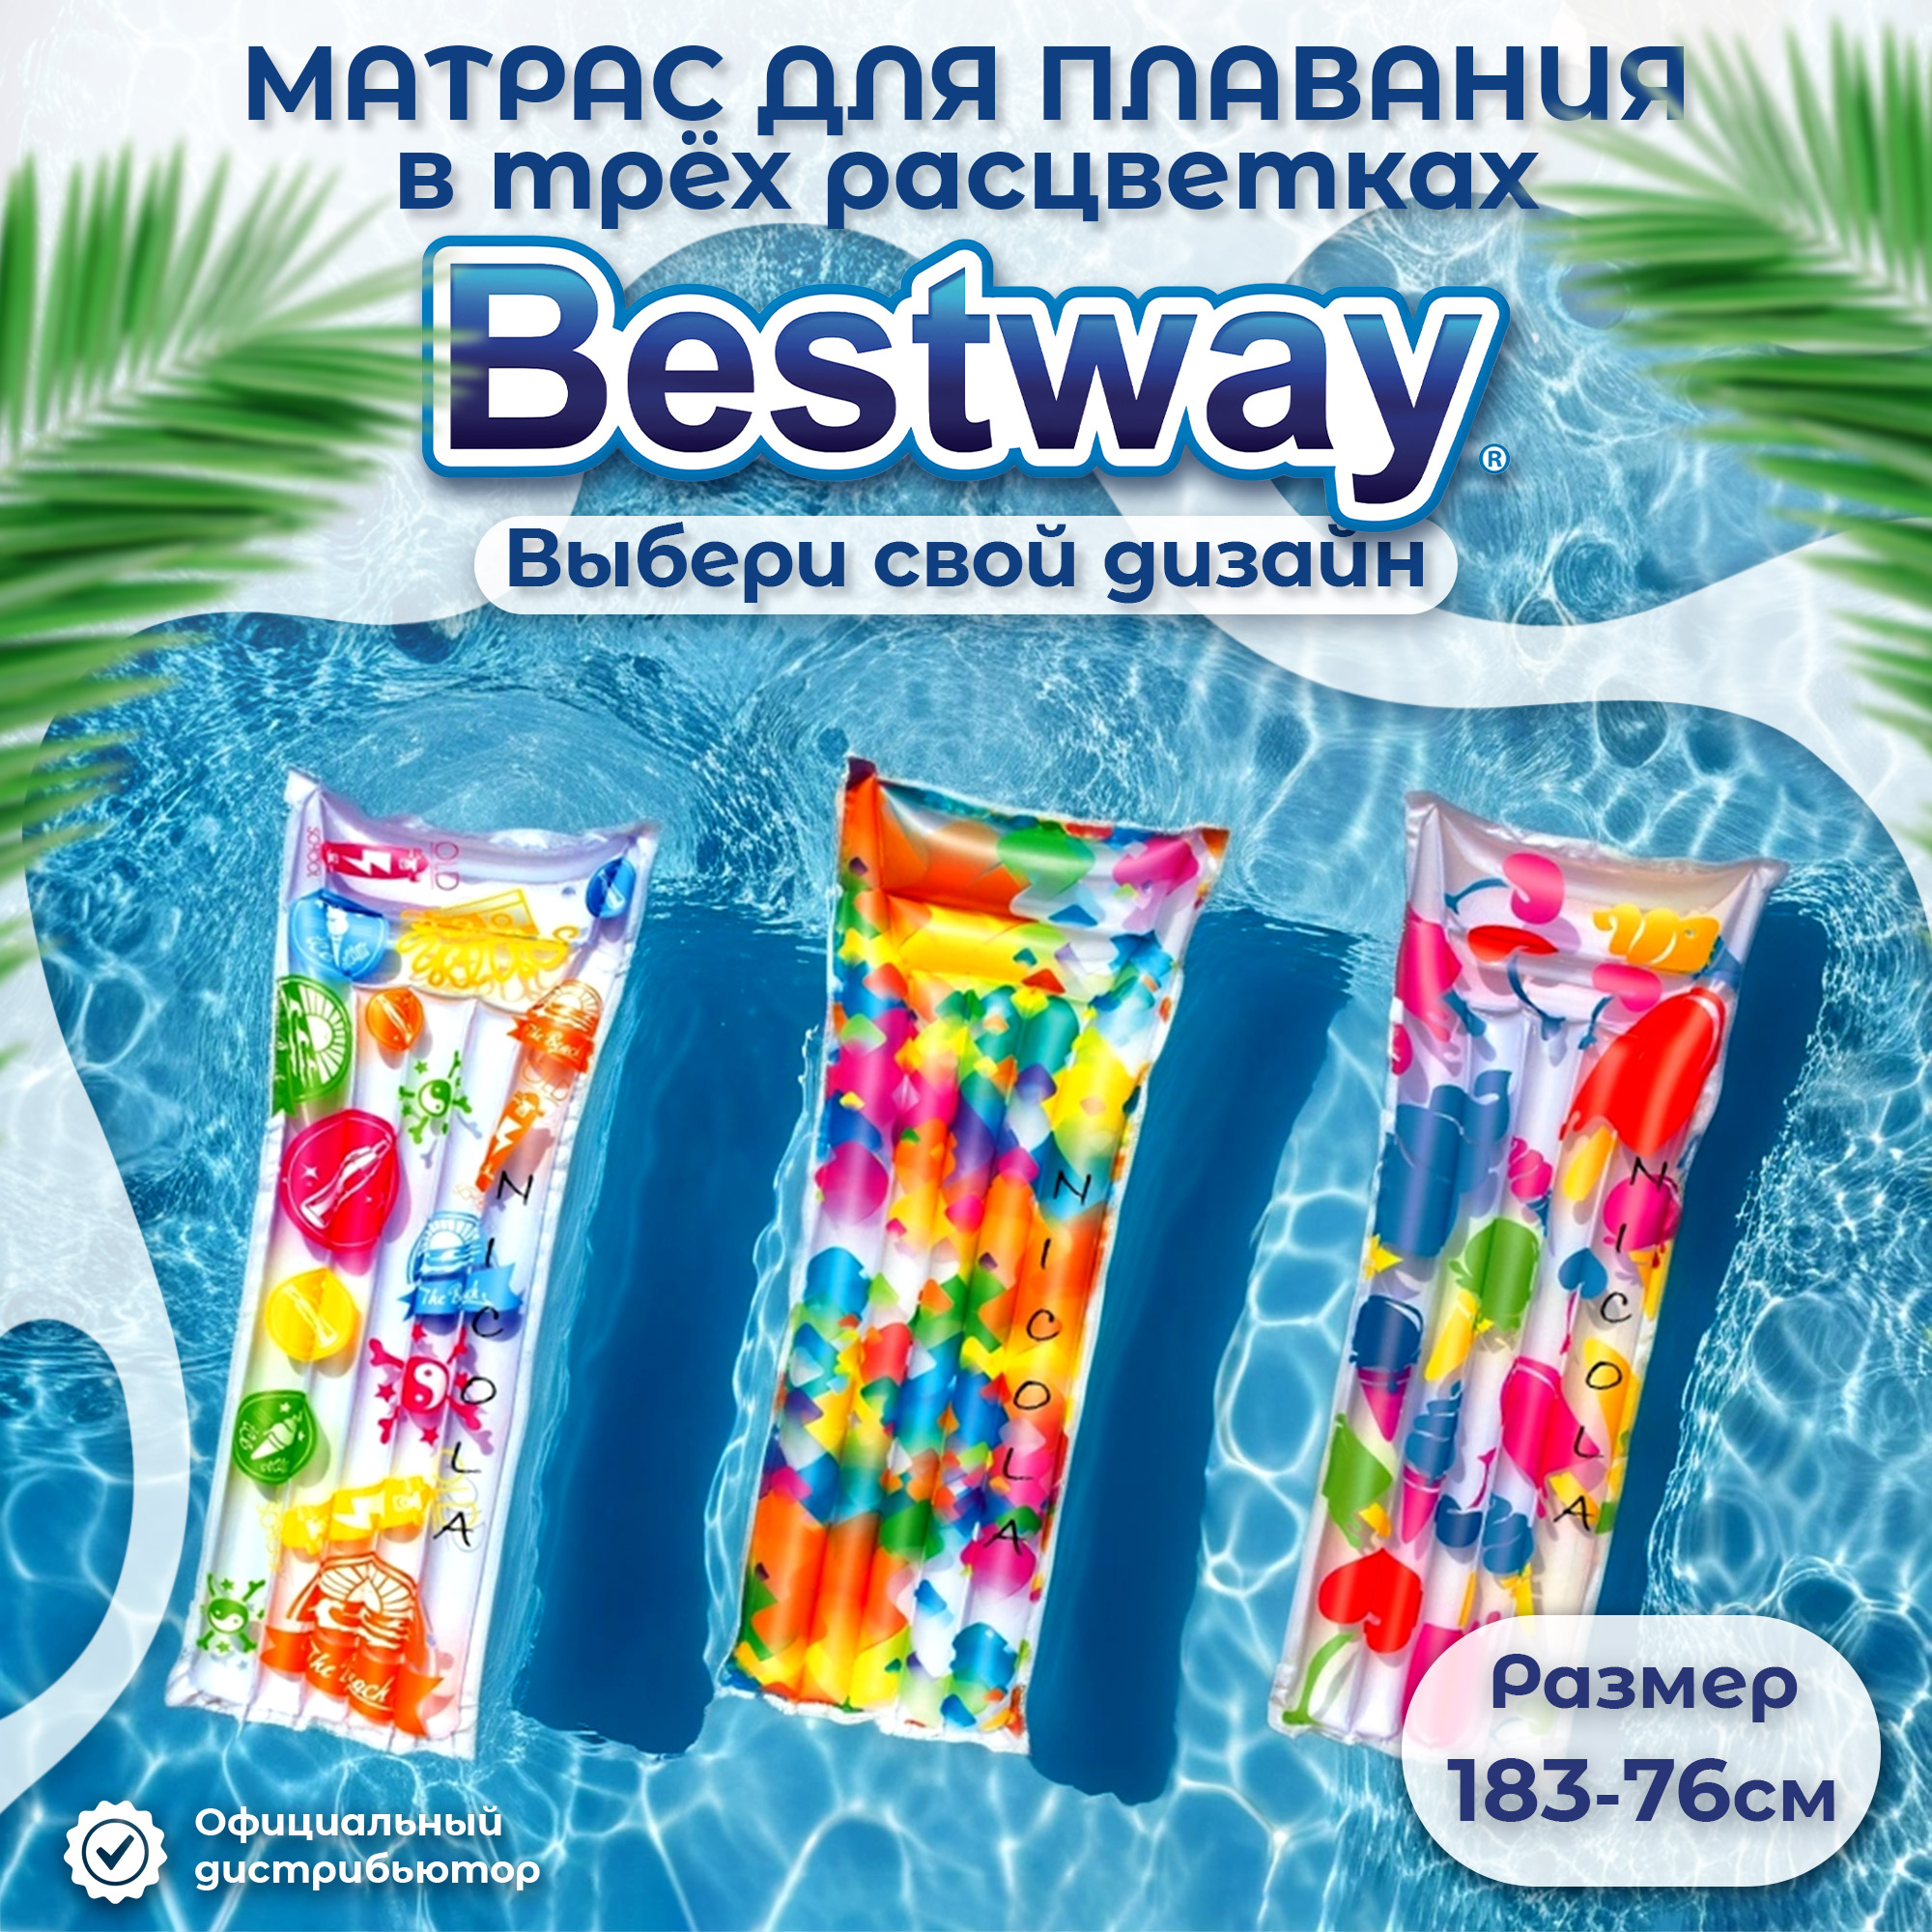 Матрас надувной Best way в трёх расцветках 183х69 см (44033) - фото 2